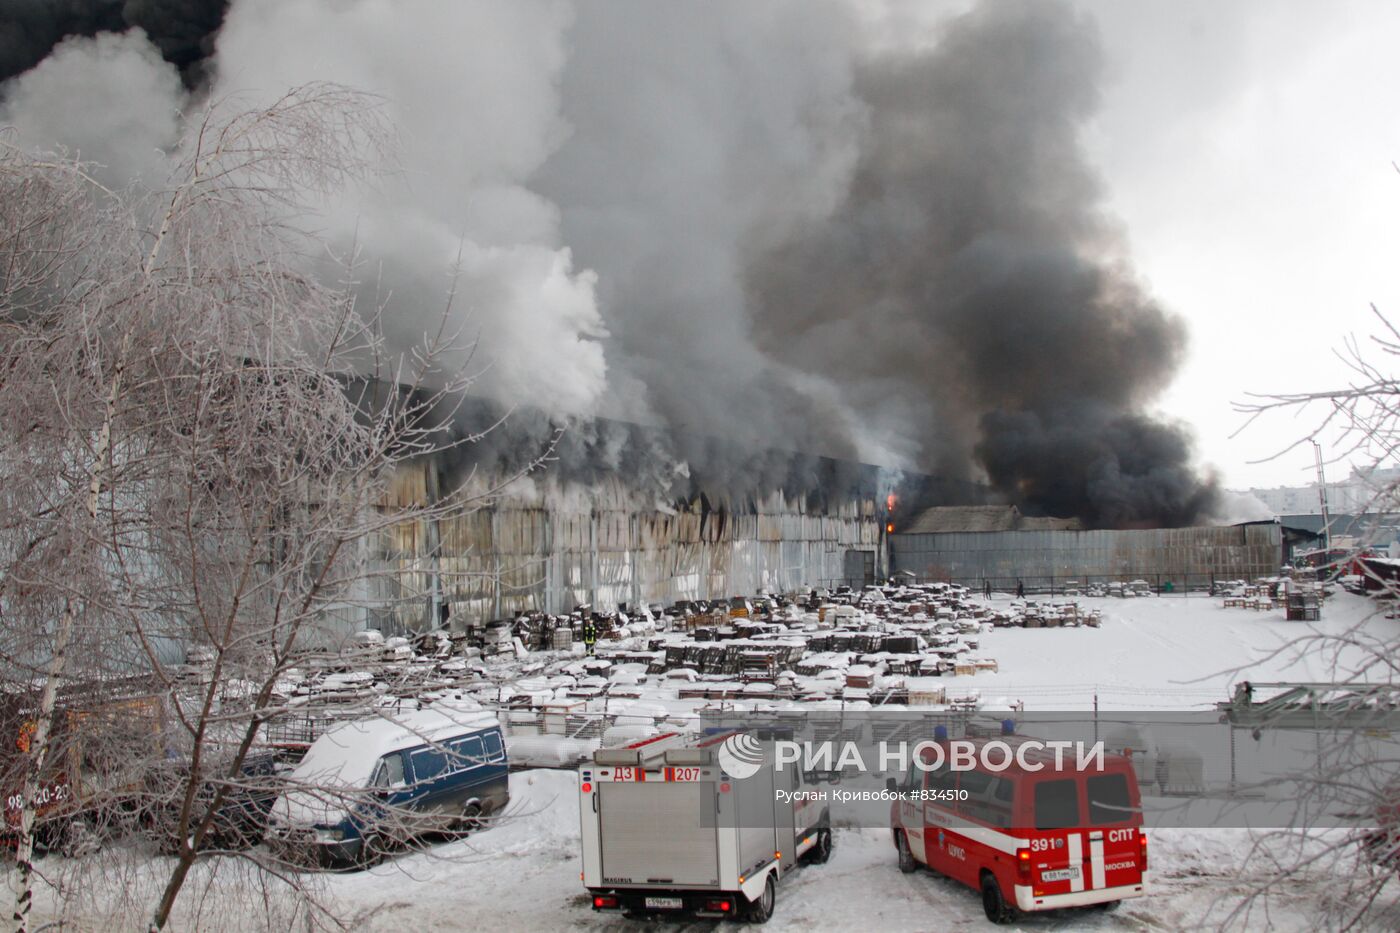 Тушение пожара на складе с мебелью на северо-востоке Москвы